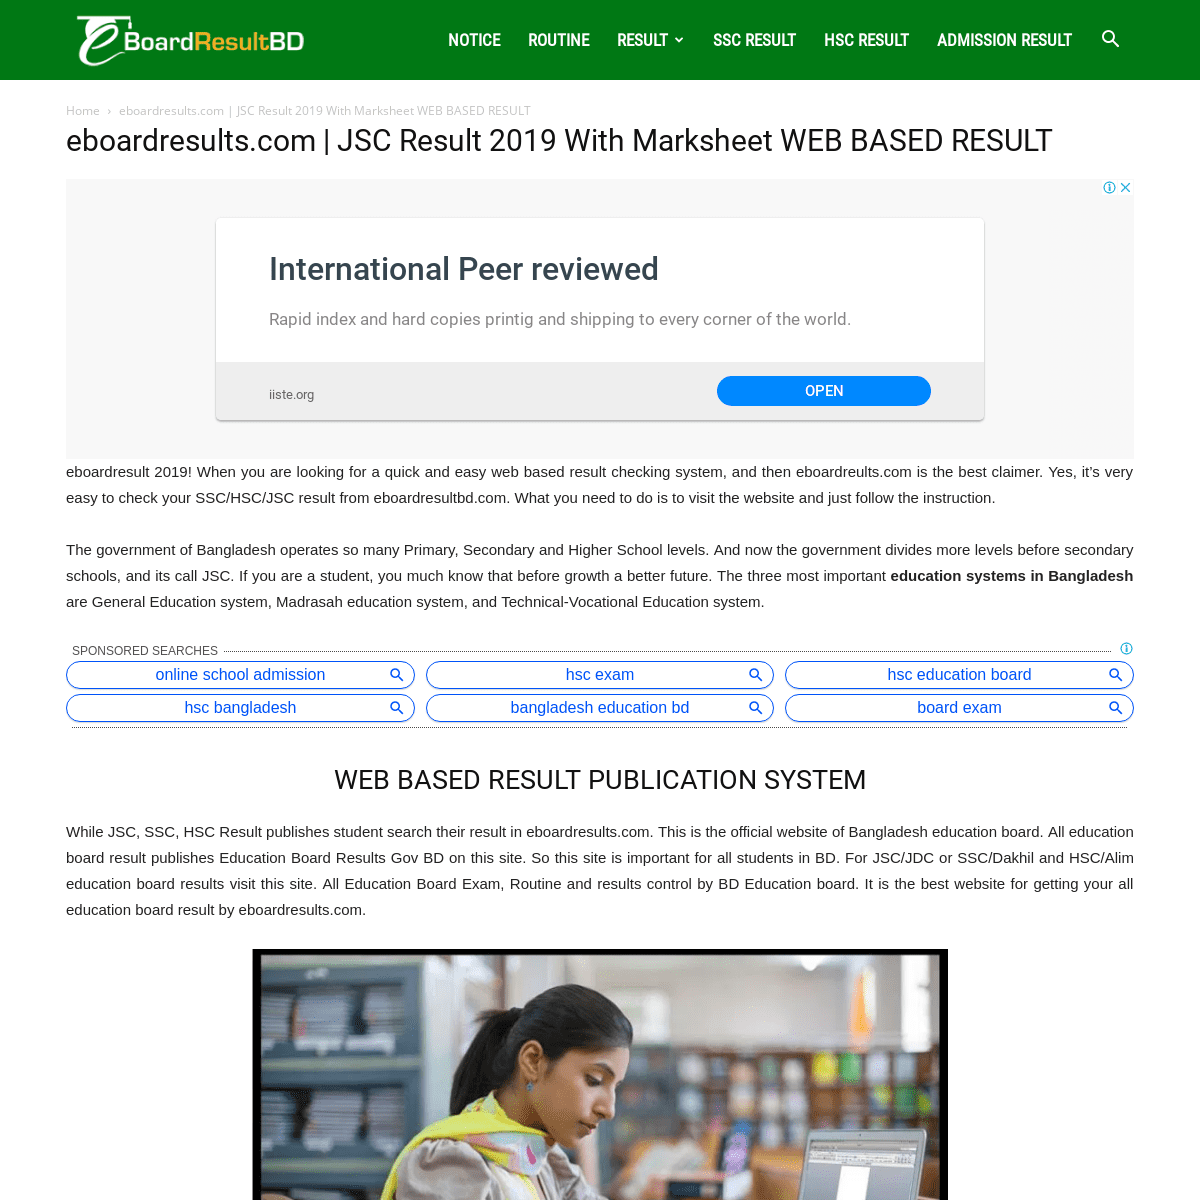 eboardresults.com | JSC Result 2019 With Marksheet Web Based Result